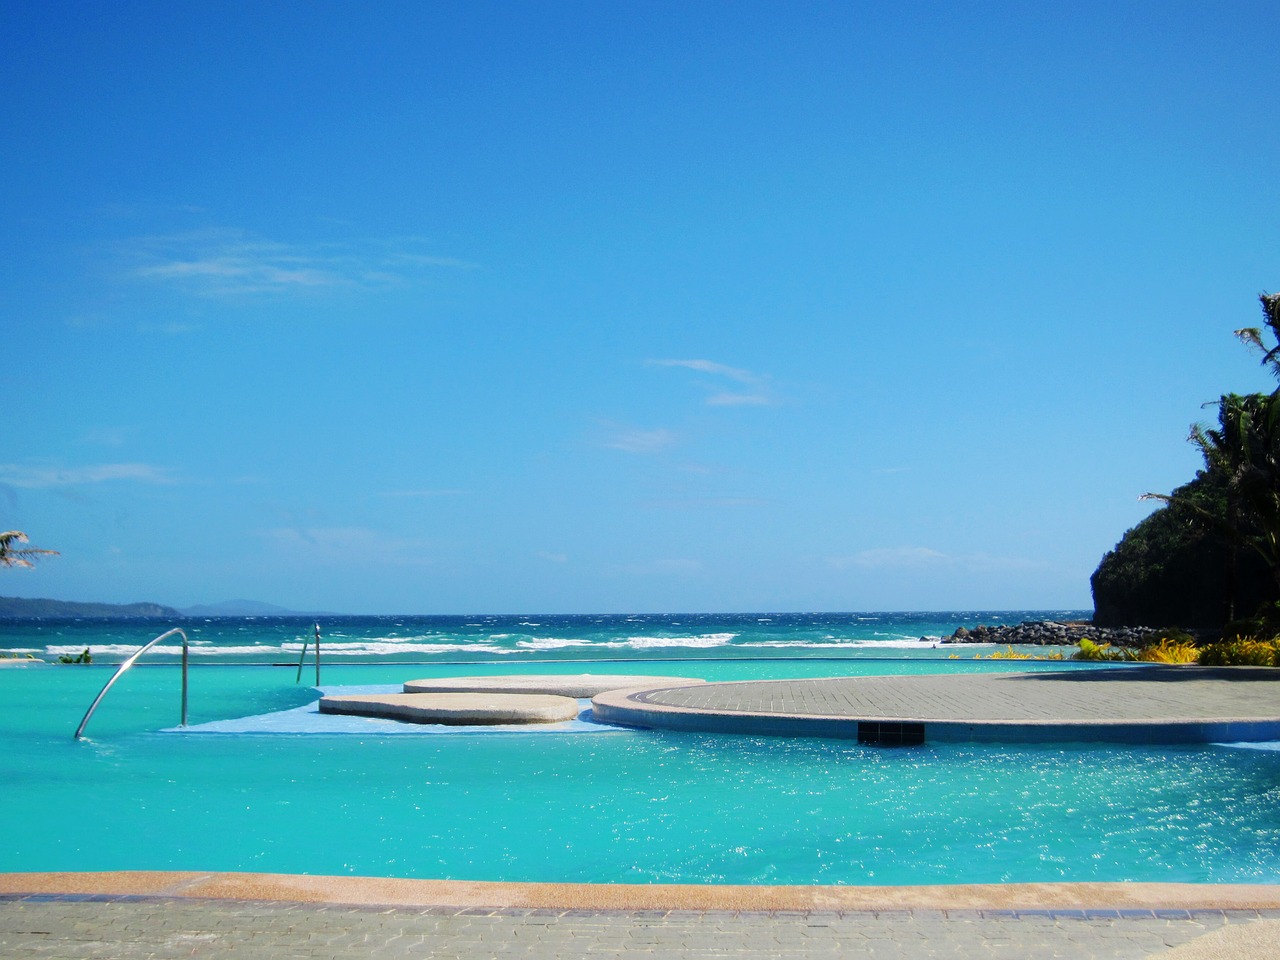 swimming pool  philippine lotto central  sea free photo